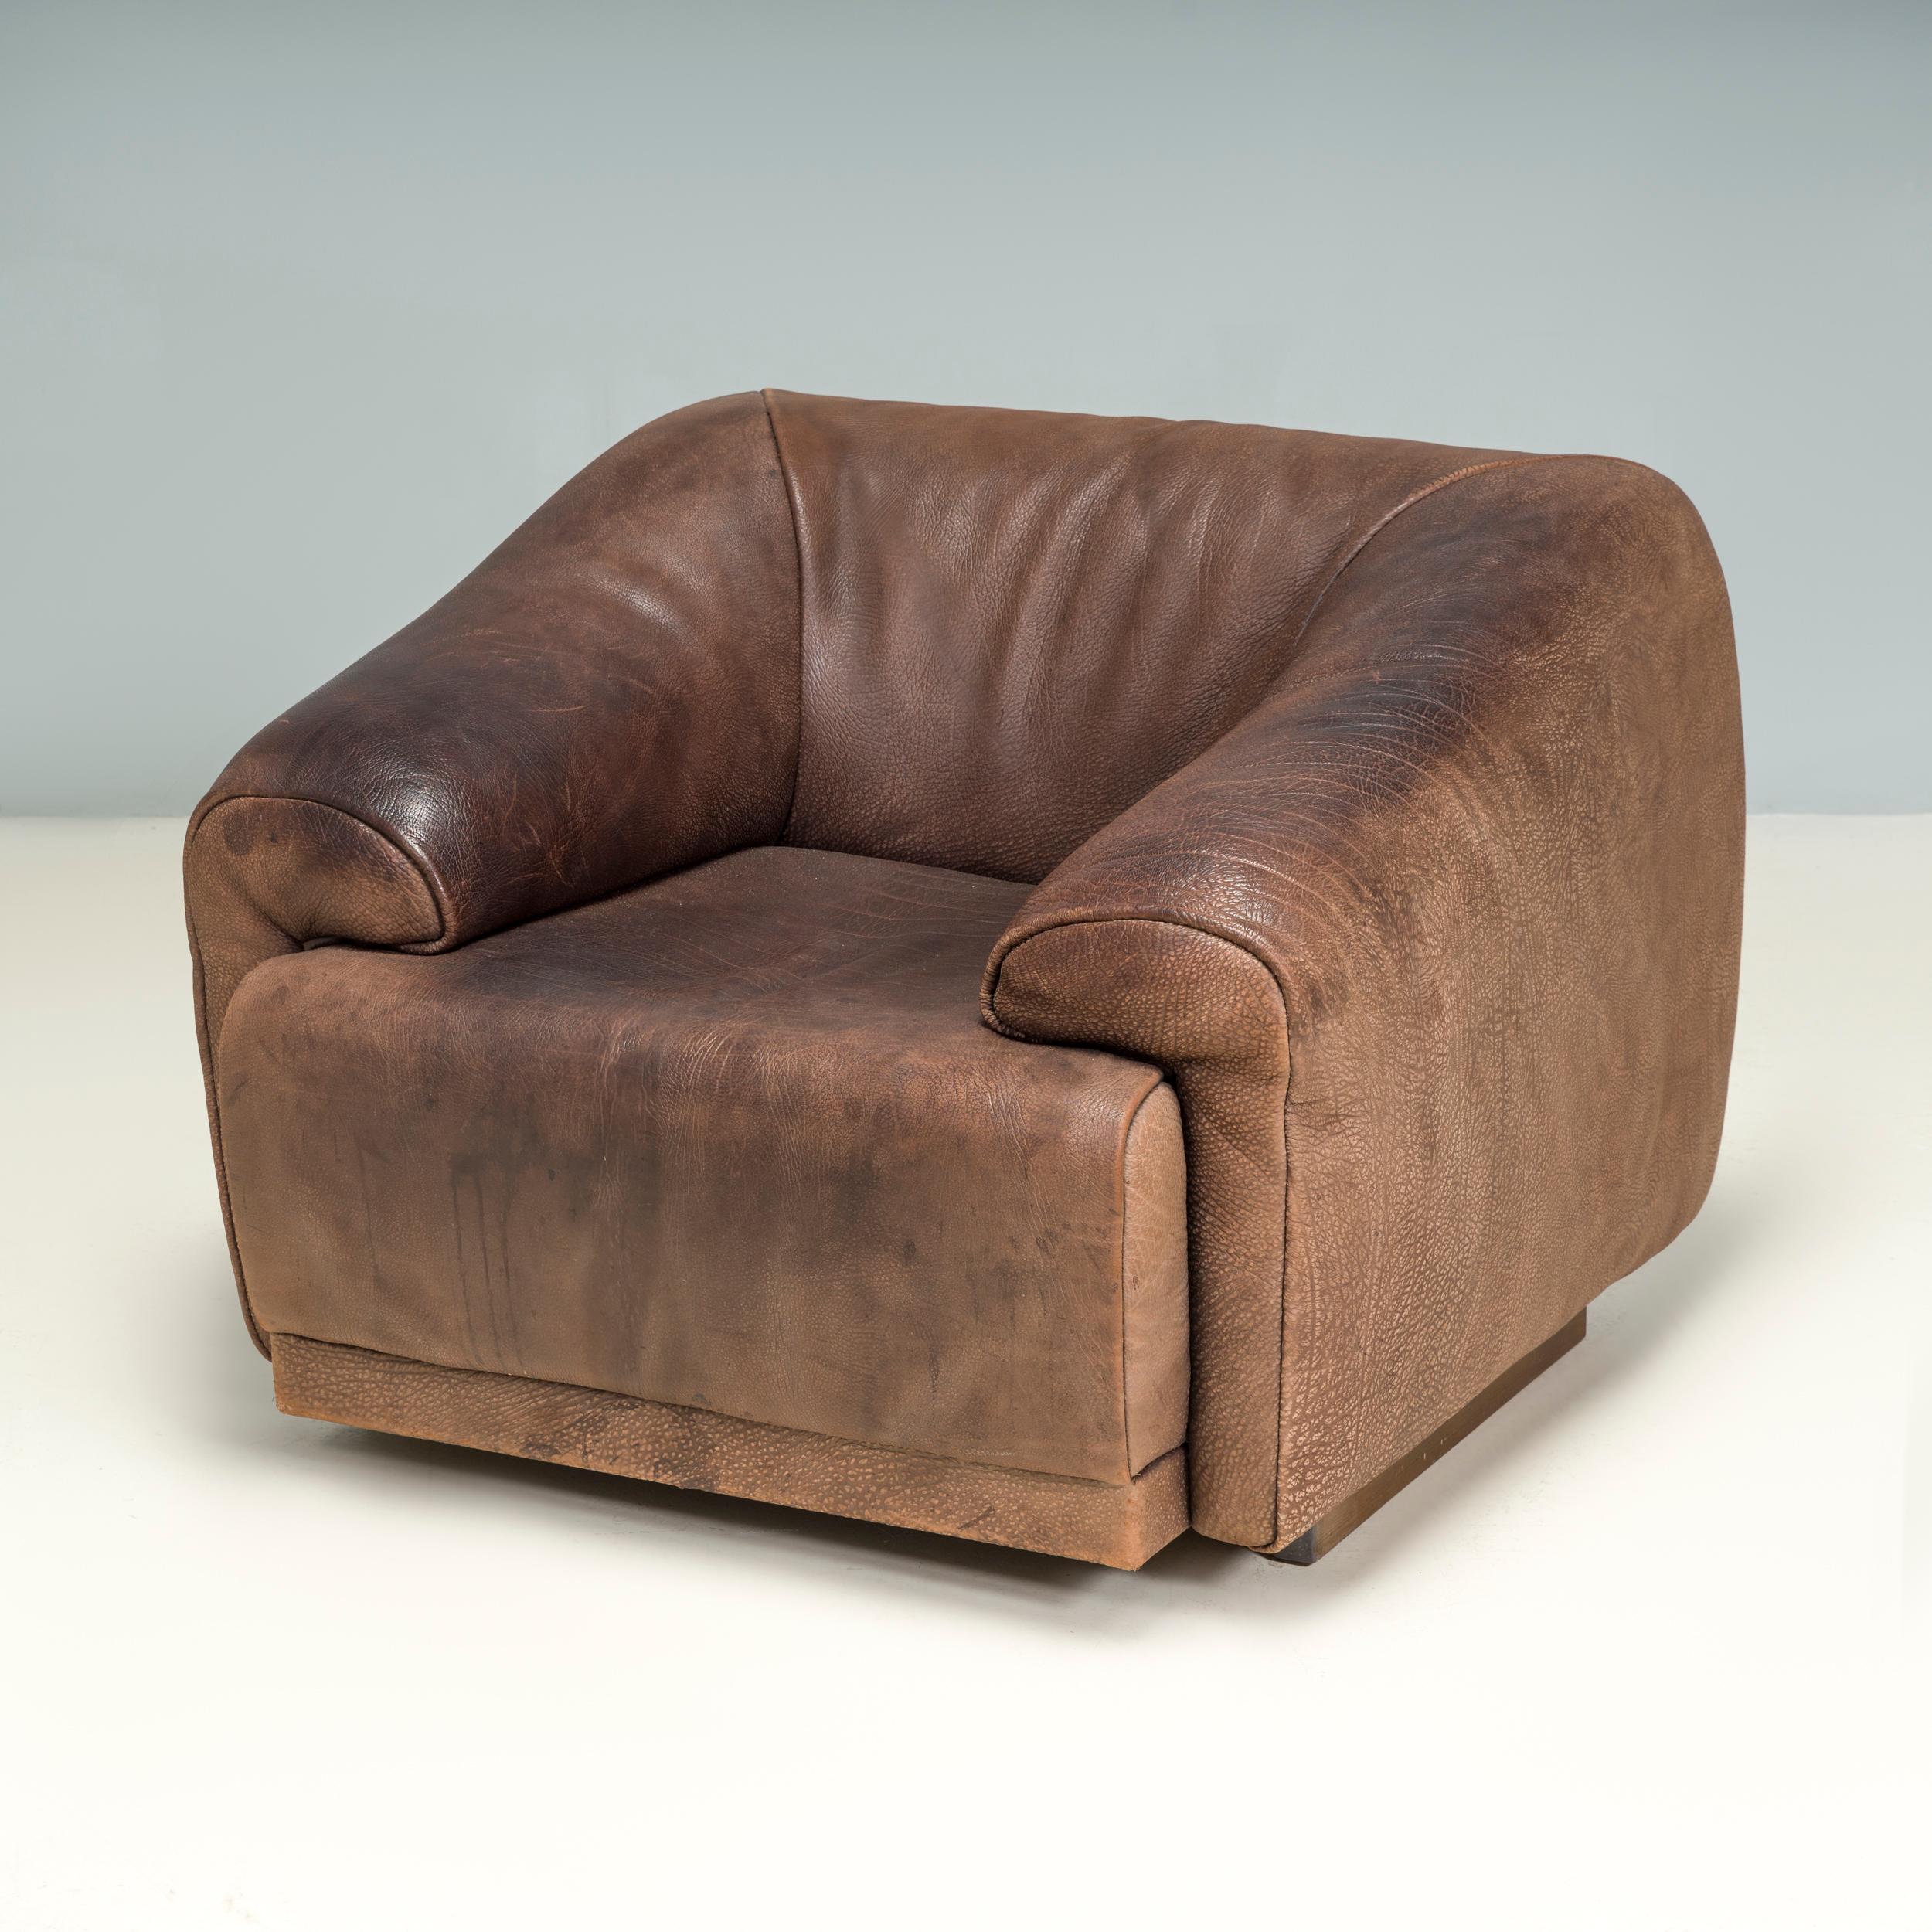 Fundada en 1965, la empresa de muebles De Sede es conocida desde entonces por sus diseños de piel de calidad y sus icónicos sofás y sillones.

Totalmente tapizado en suave cuero de búfalo marrón, este sillón de los años 70 tiene una silueta cuadrada